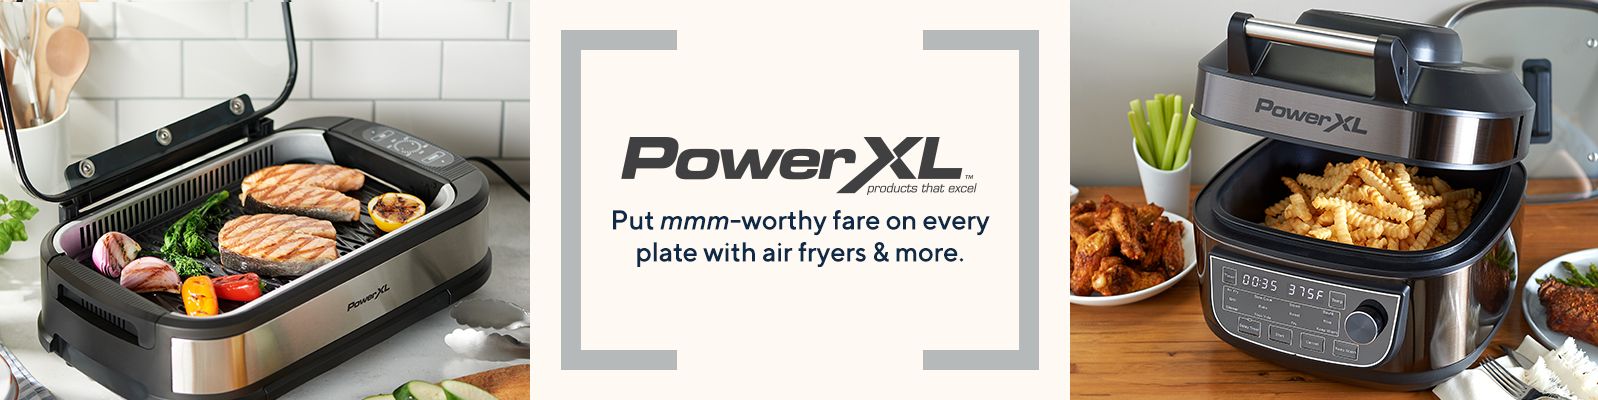 PowerXL - Latest Emails, Sales & Deals